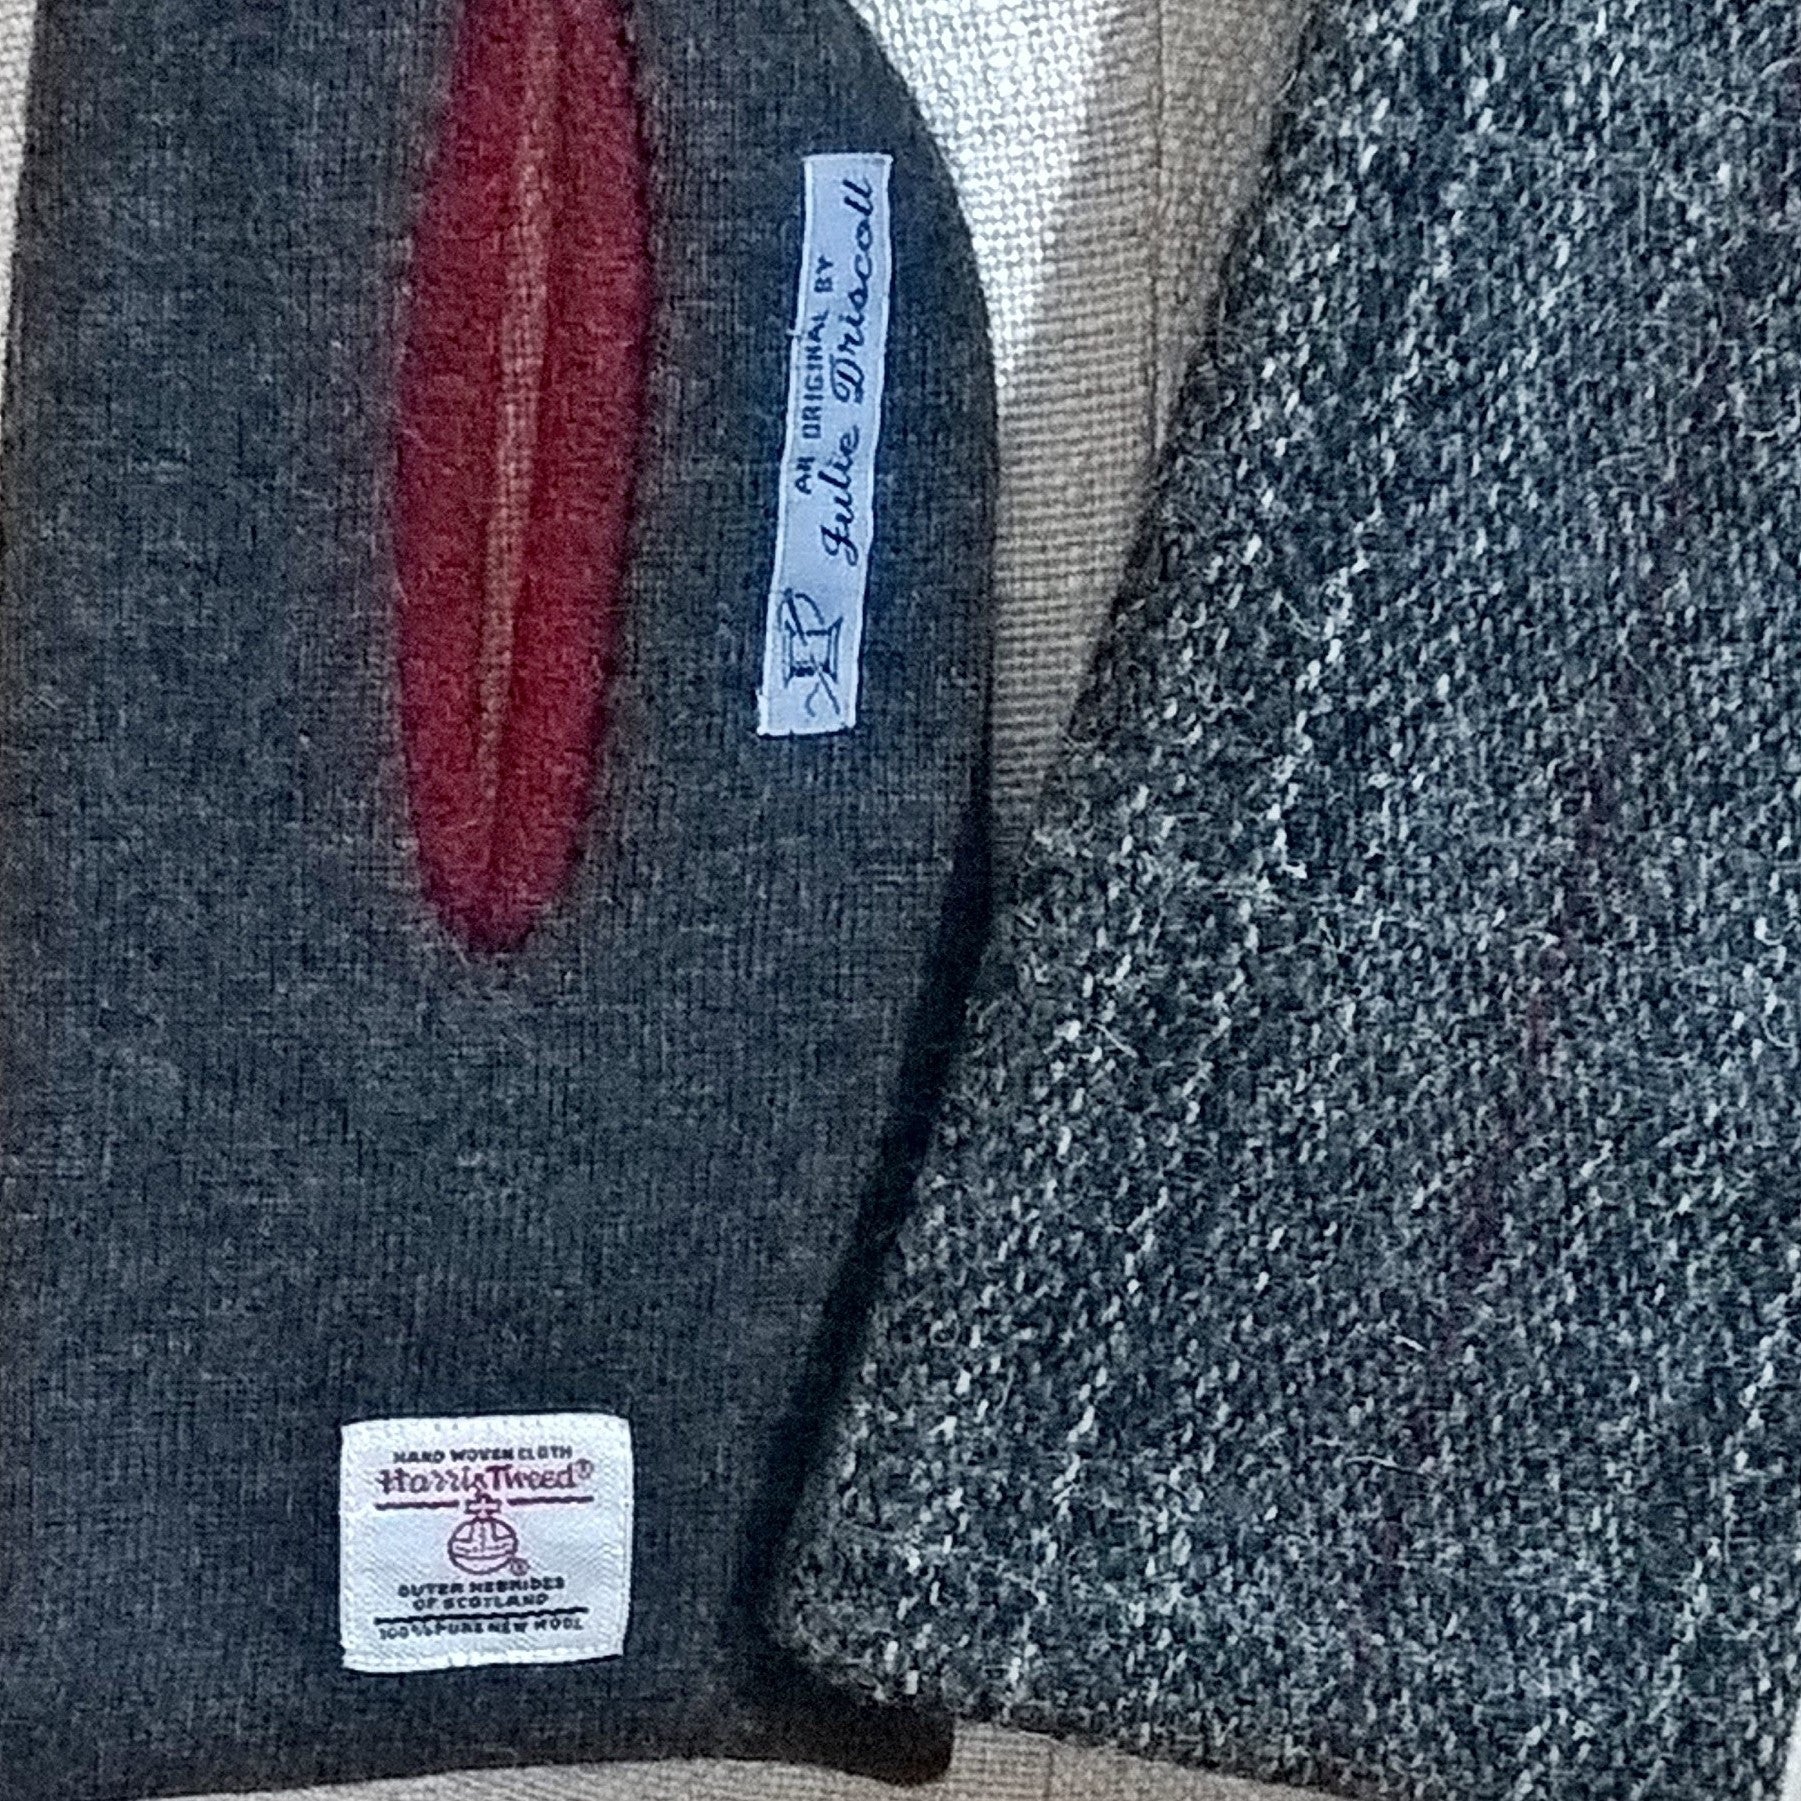 Harris Tweed label on inside of grey scarf